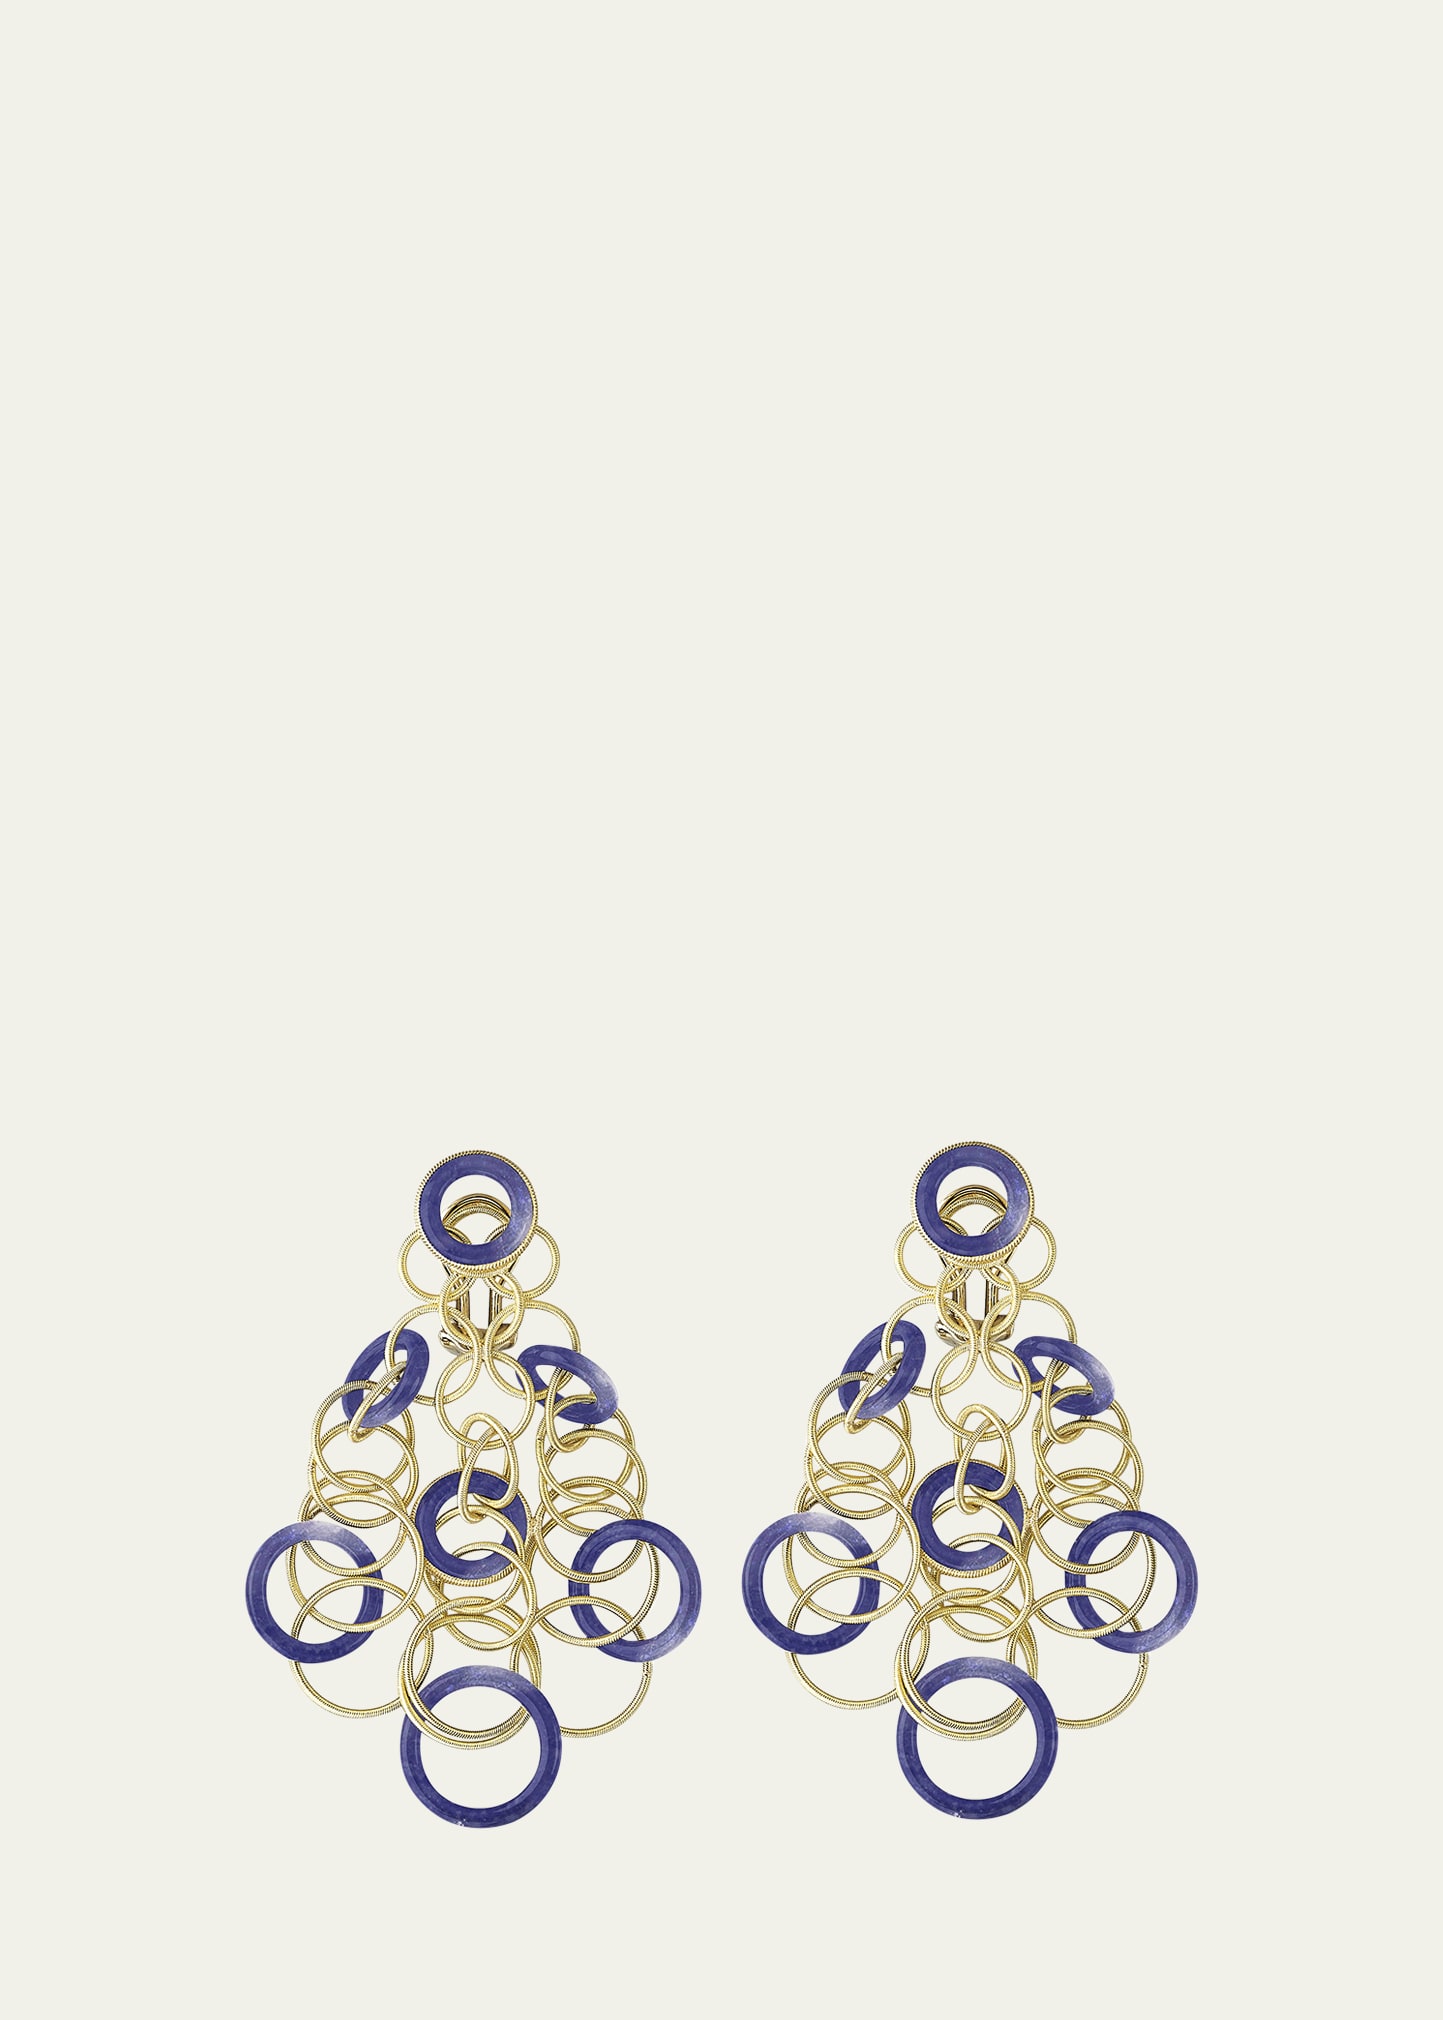 Buccellati 18k Gold Macri Classica Earrings With Diamonds